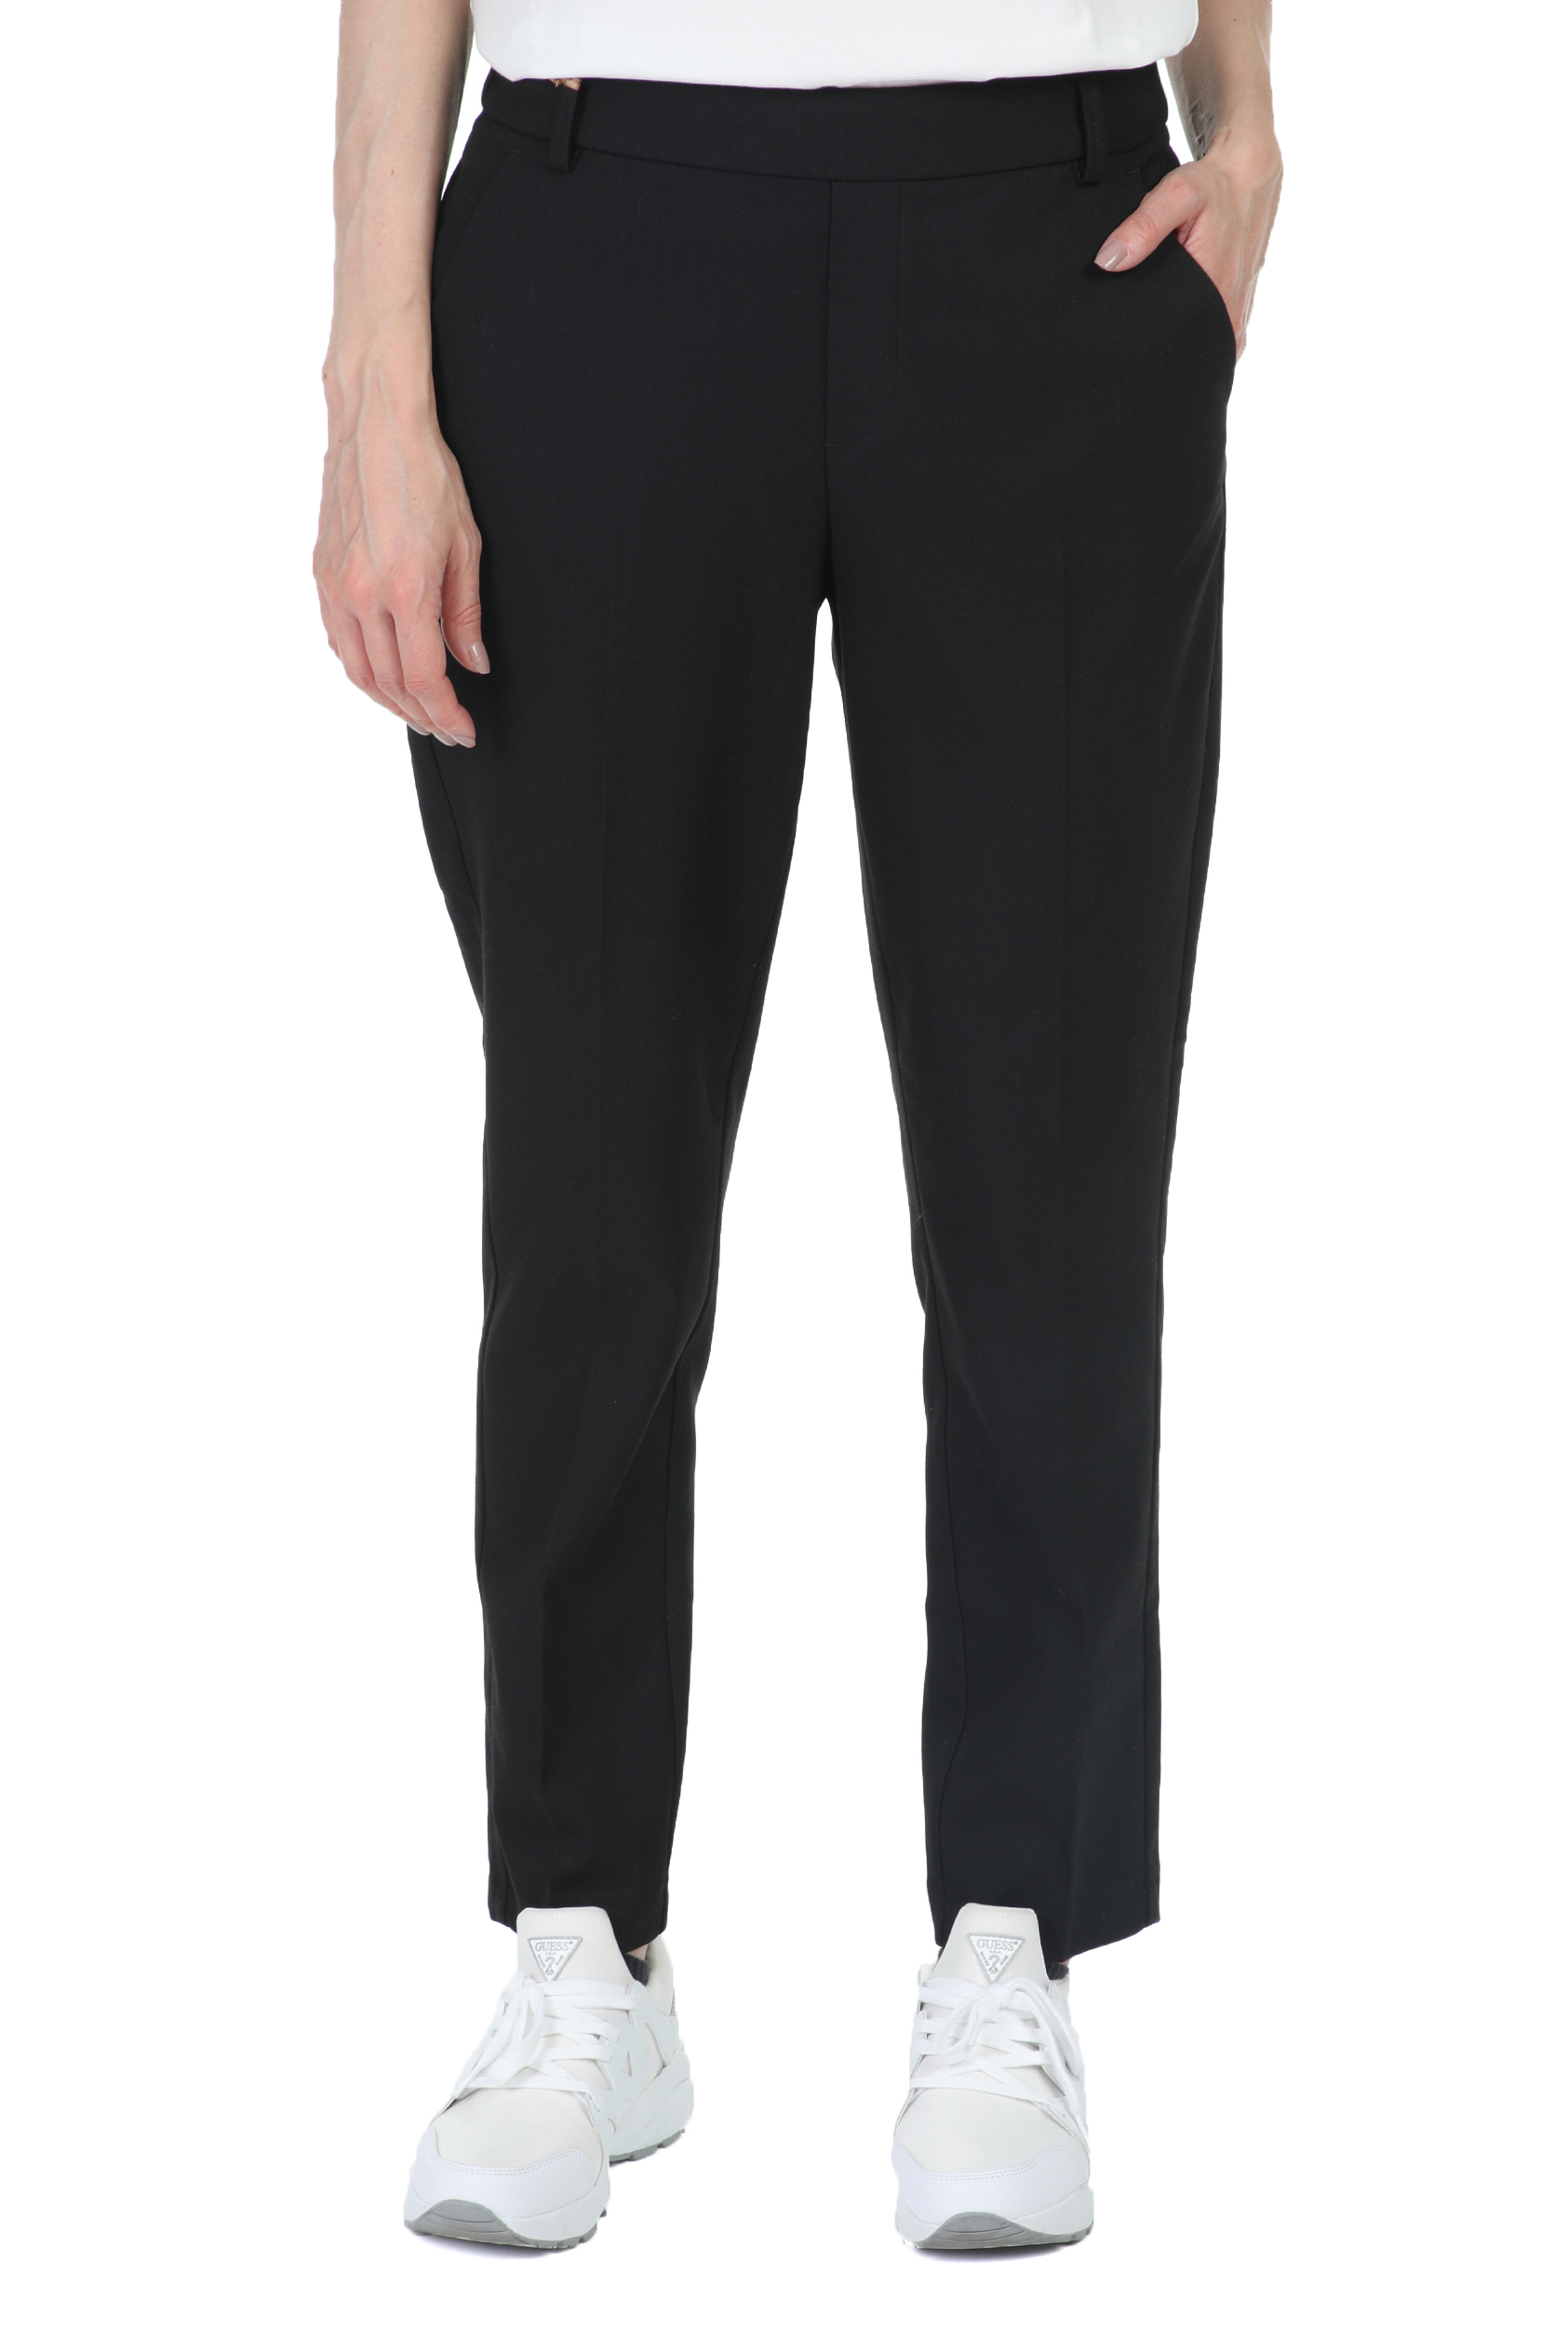 Γυναικεία/Ρούχα/Παντελόνια/Cropped MOS MOSH - Γυναικείο παντελόνι MOS MOSH Gerry Twiggy μαύρο